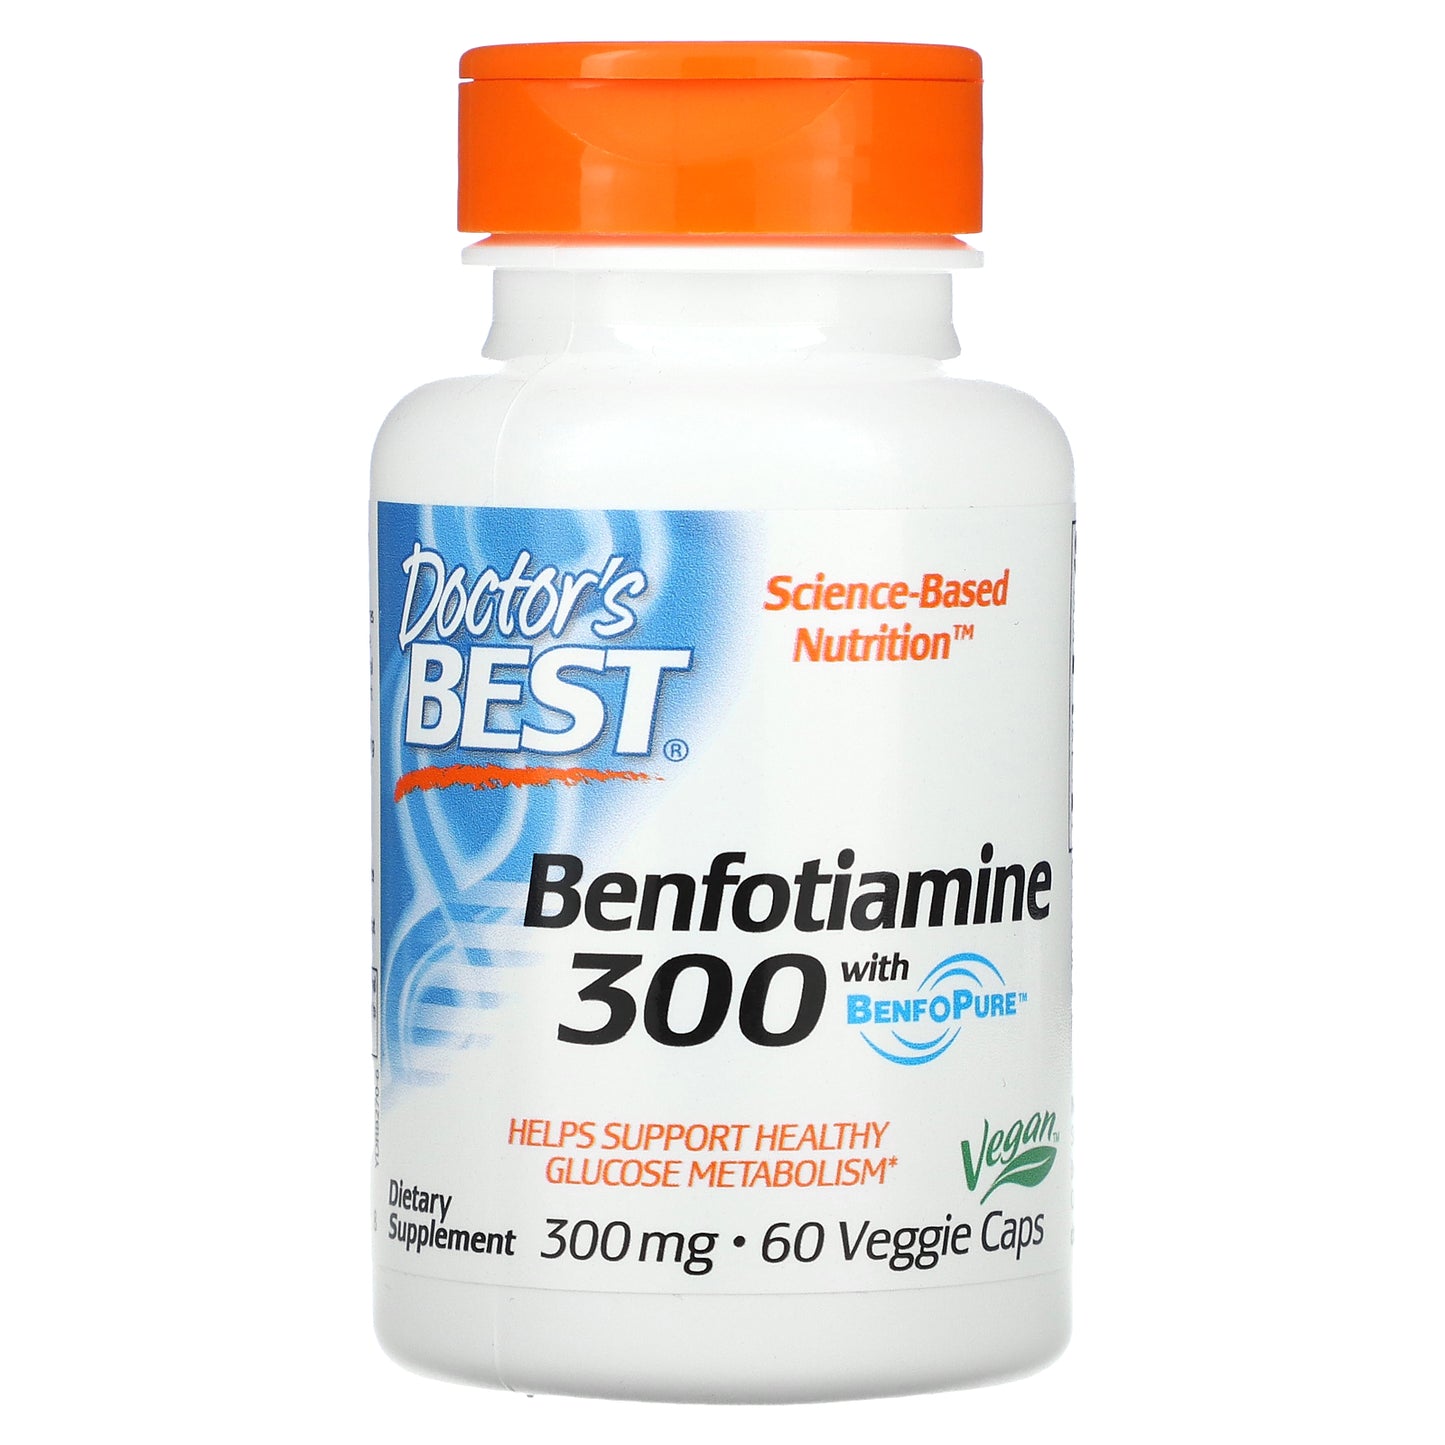 Doctor's Best Benfotiamine with BenfoPure, 300 mg, 60 Veggie Caps